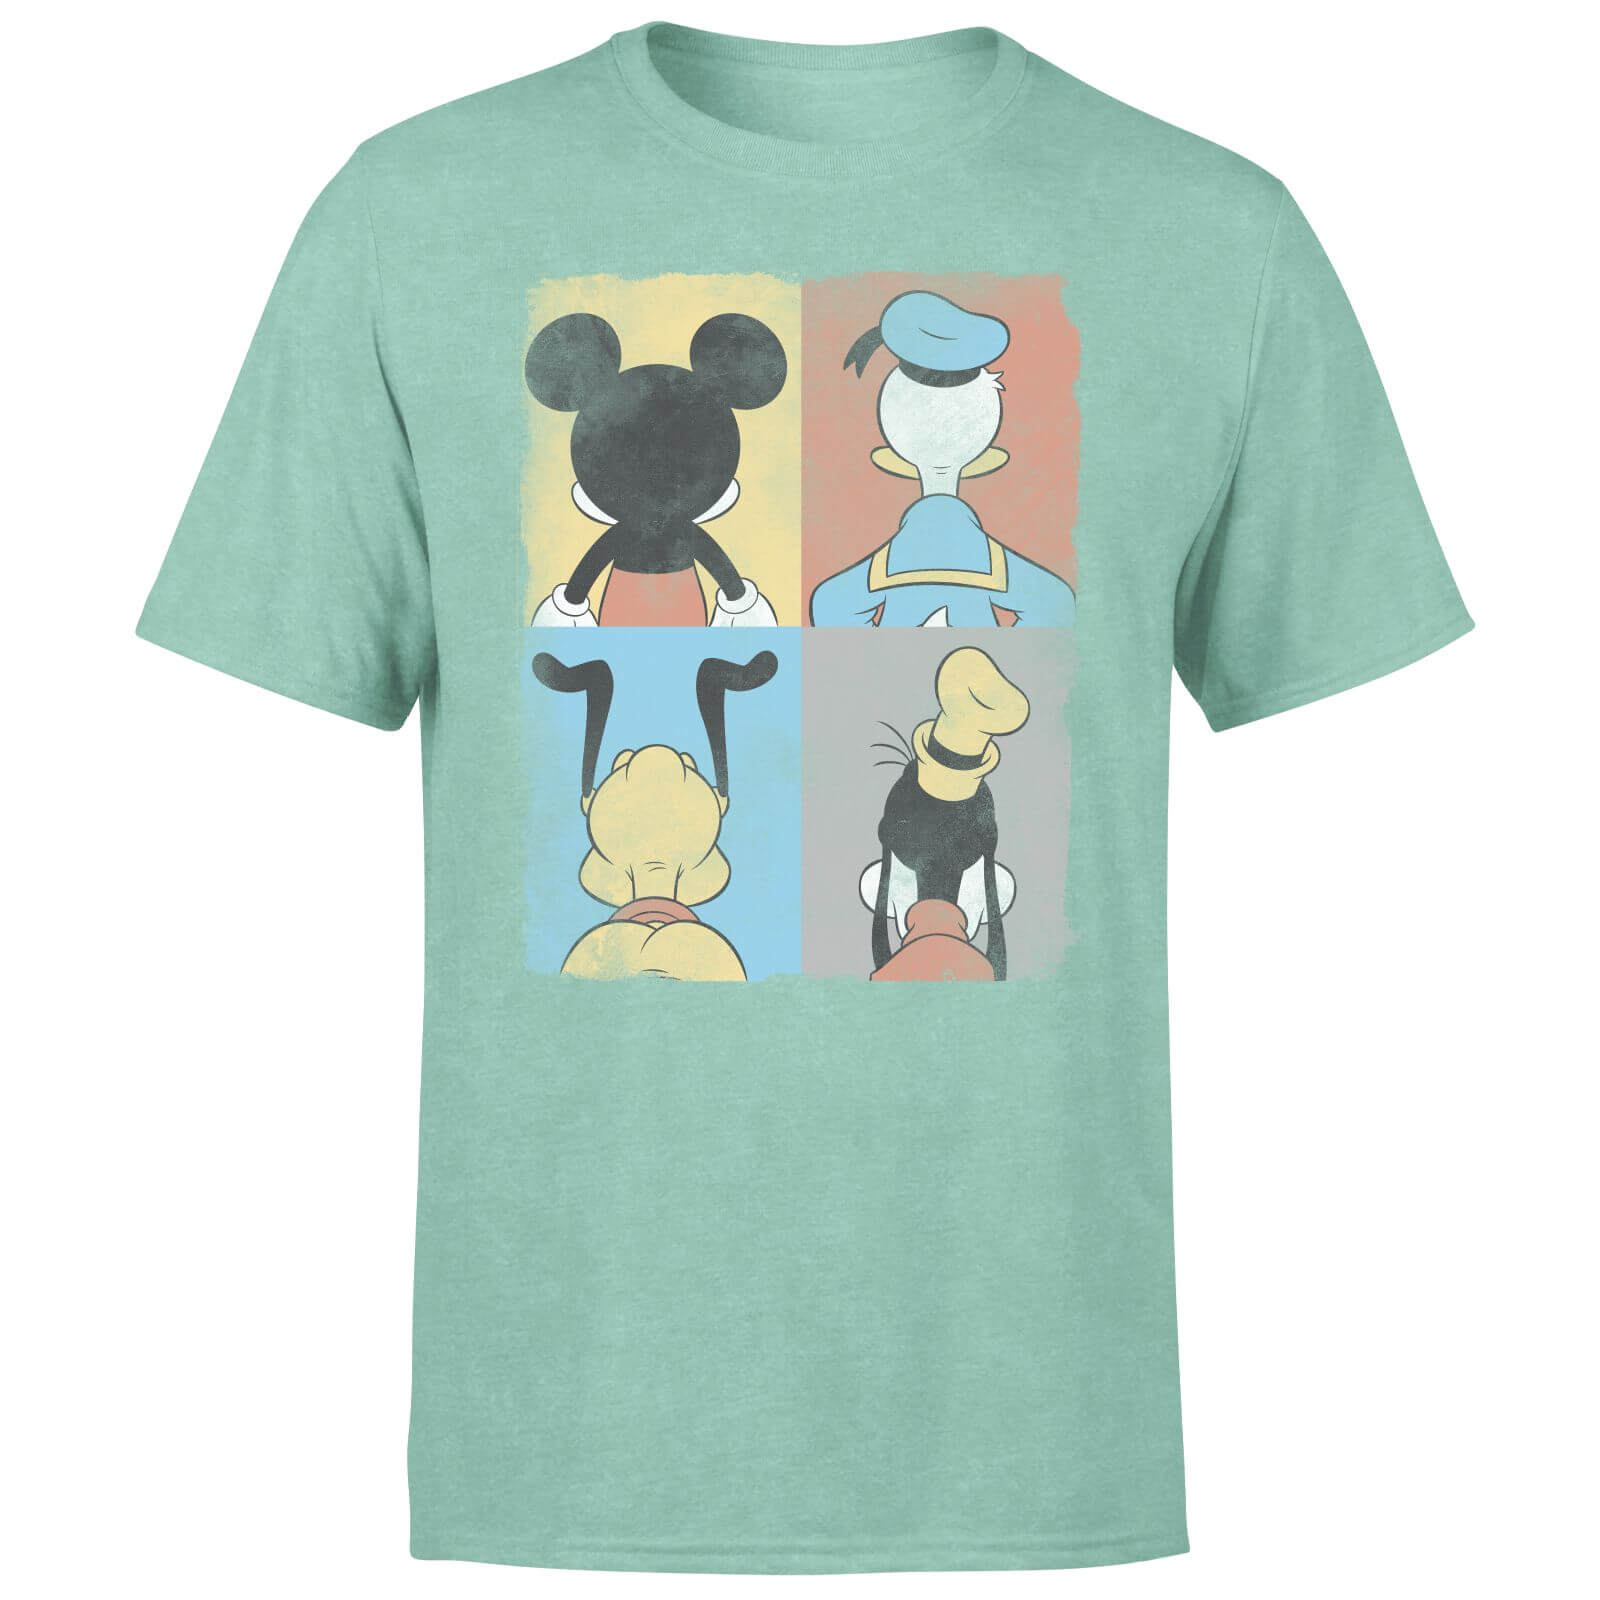 Donald Duck Mickey Mouse Pluto Goofy Tiles Men's T-Shirt - Mint Acid Wash - S - Mint Acid Wash